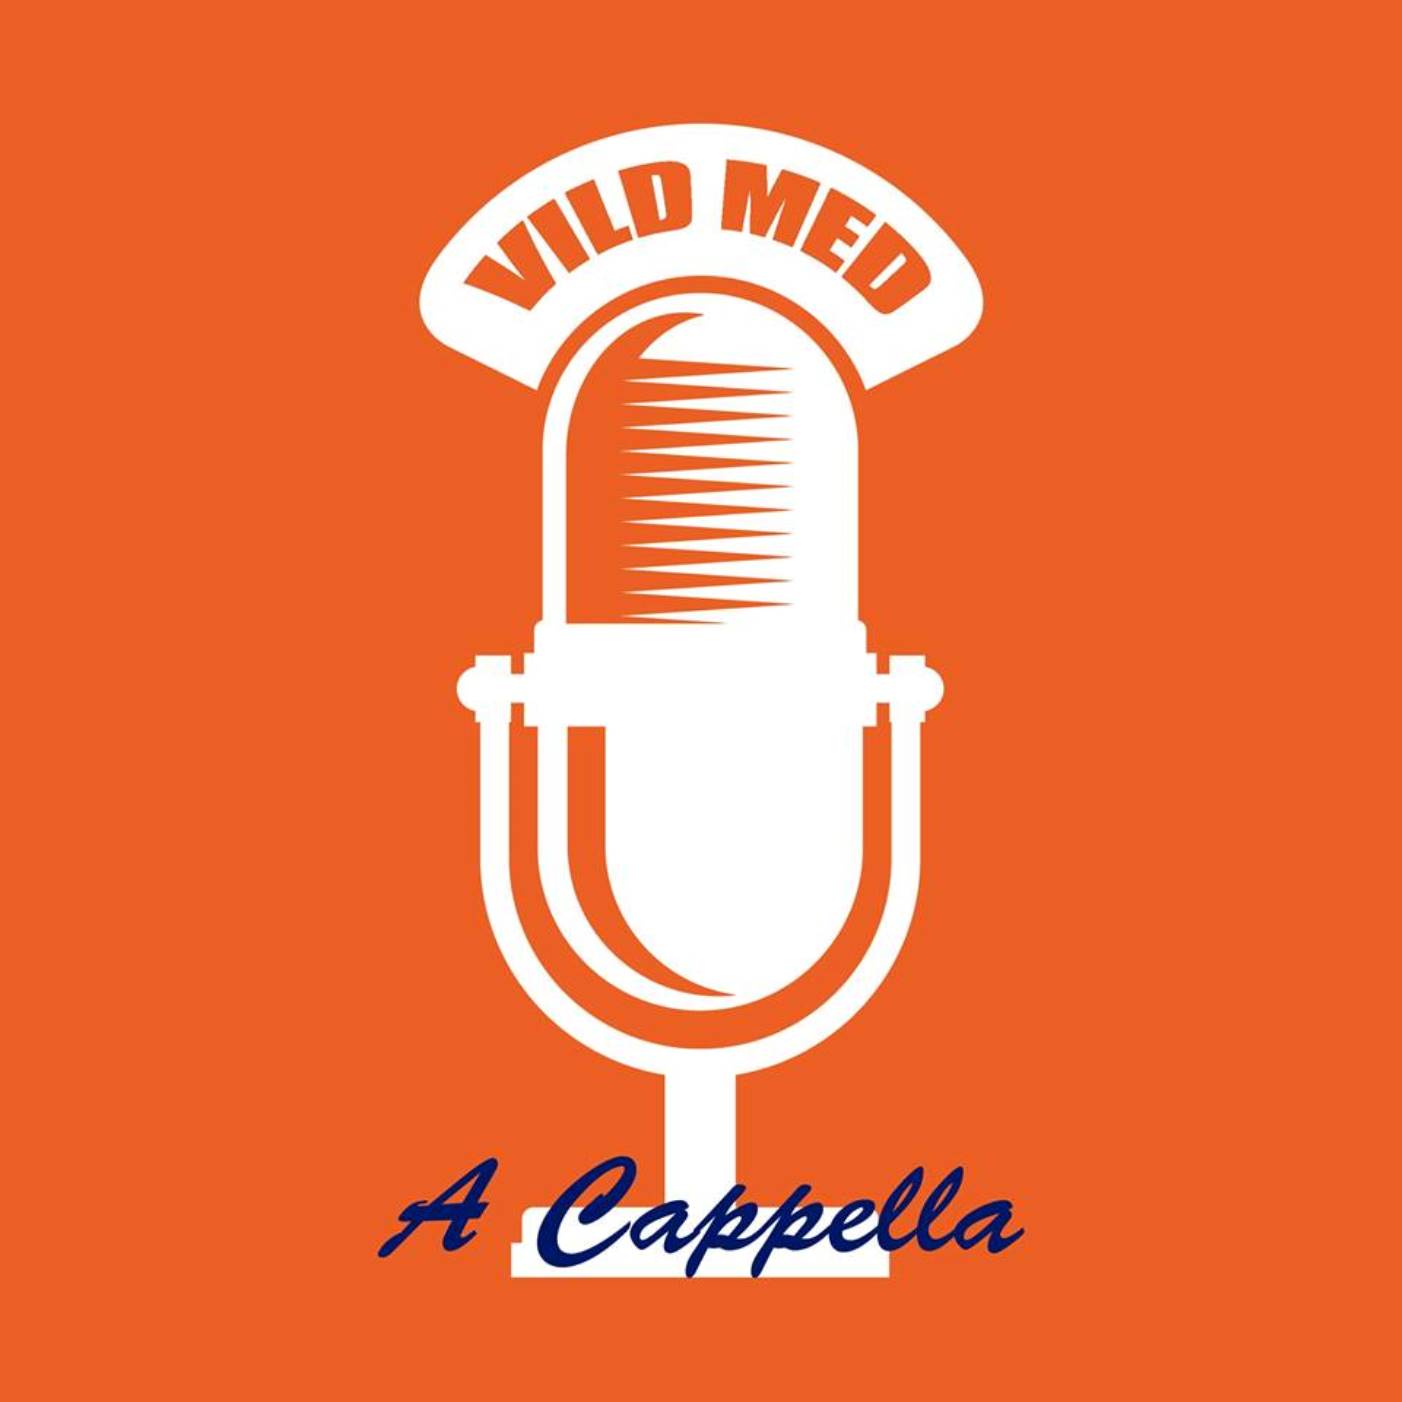 Vild med a cappella podcast